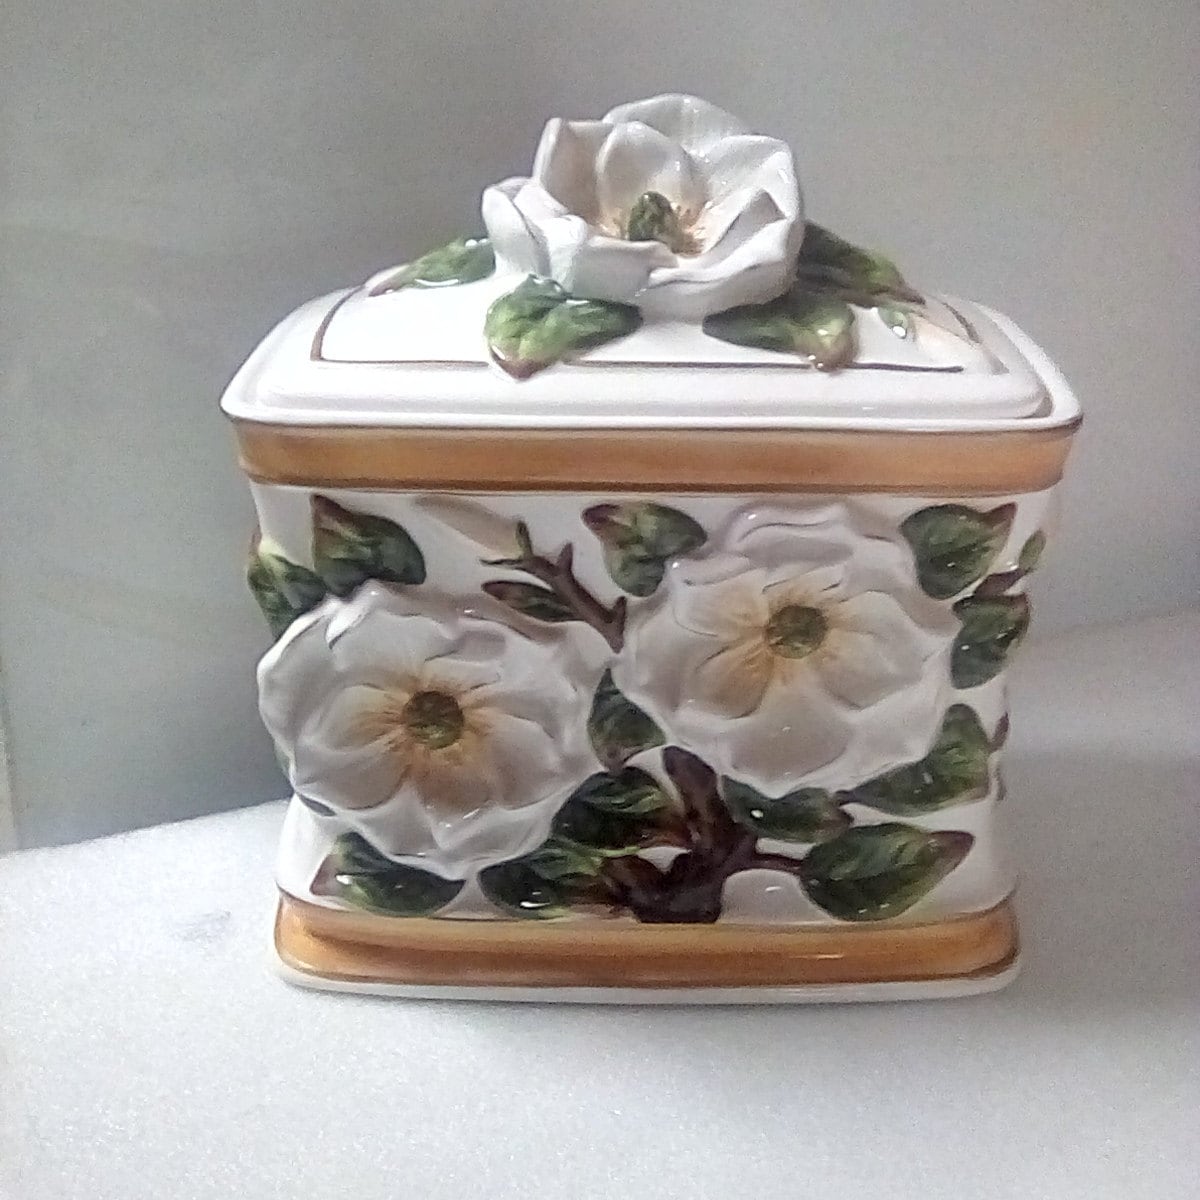 White Ceramic Modern Canister - Magnolia